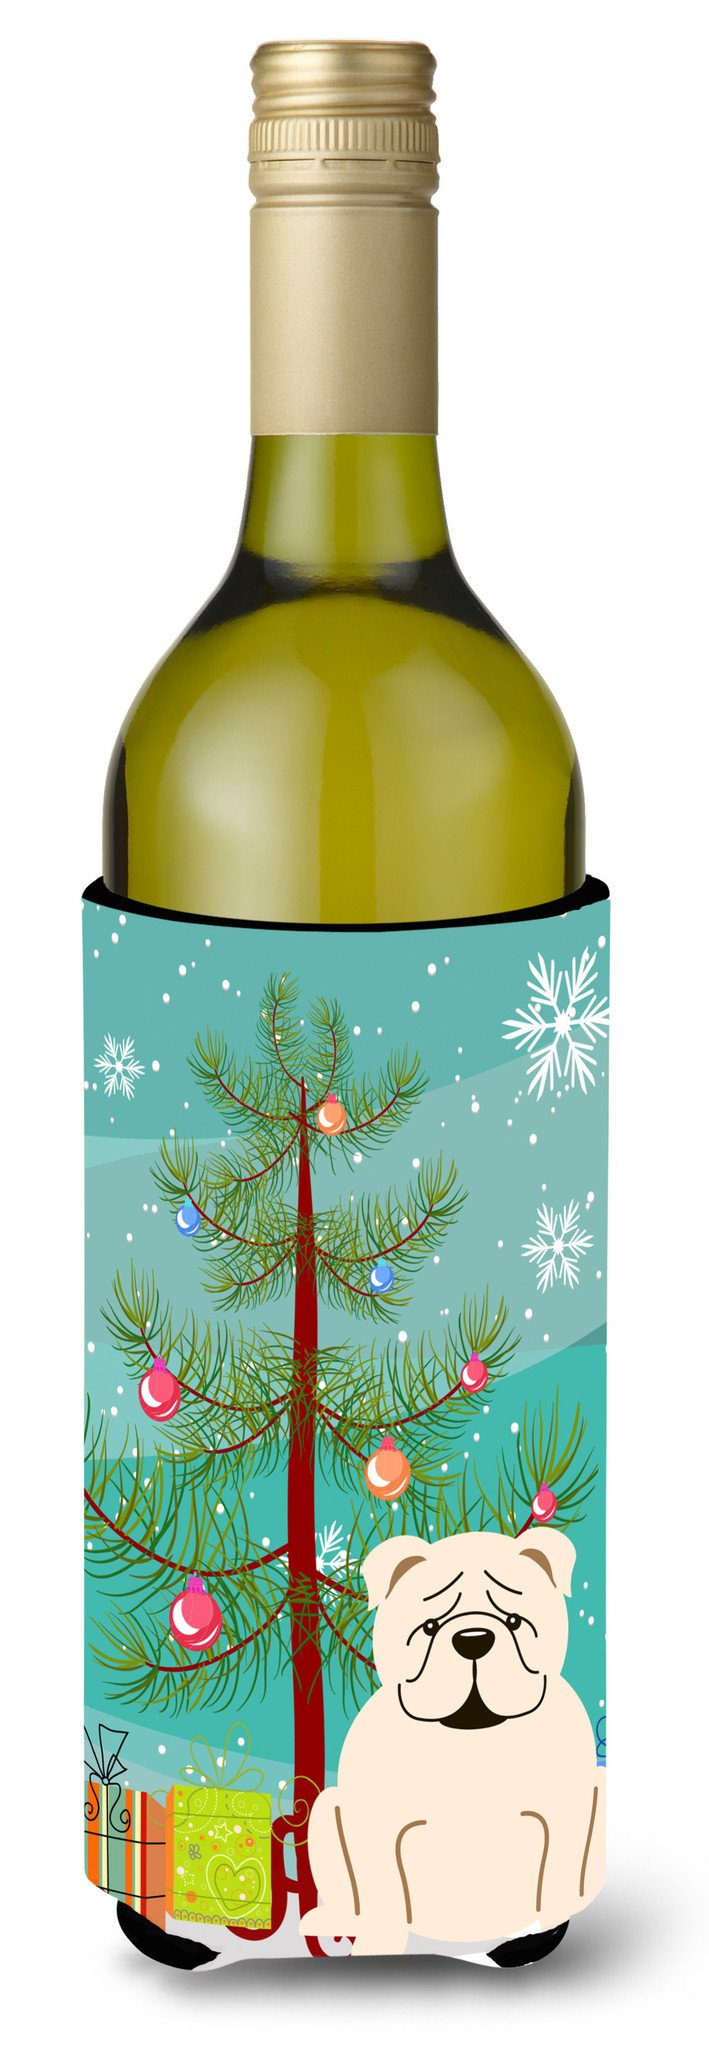 Merry Christmas Tree English Bulldog White Wine Bottle Beverge Insulator Hugger BB4248LITERK by Caroline's Treasures